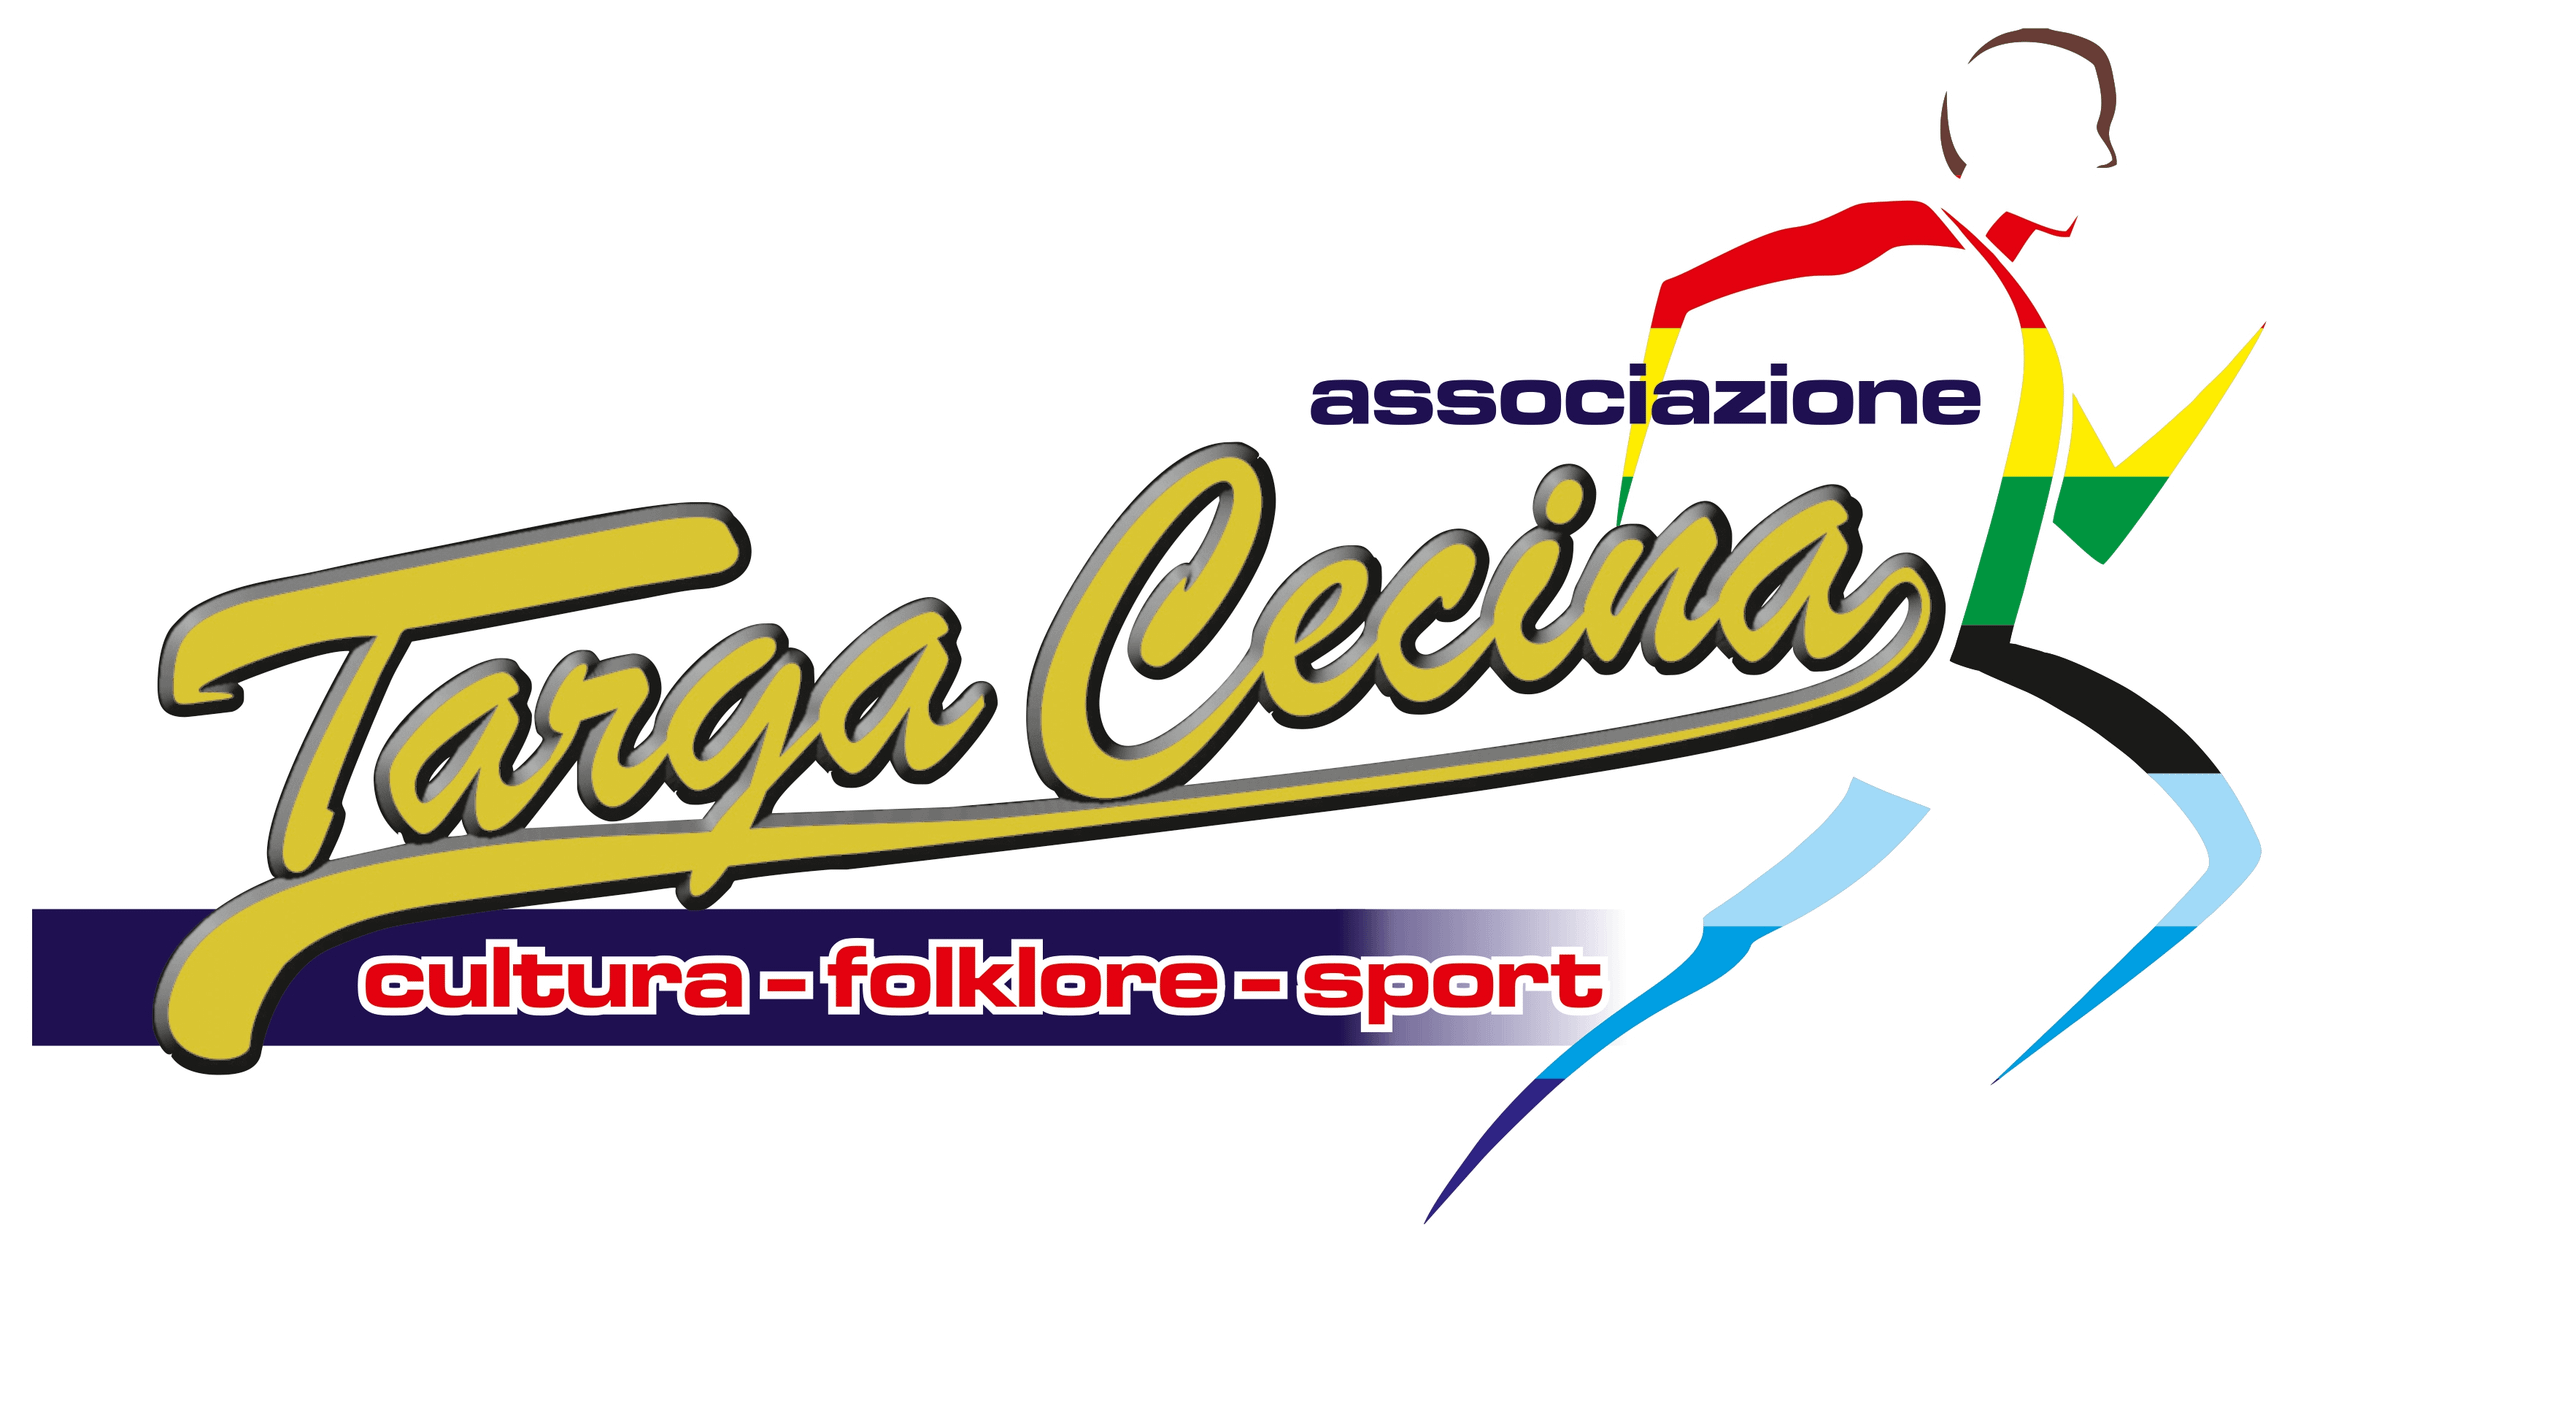 Associazione Targa Cecina